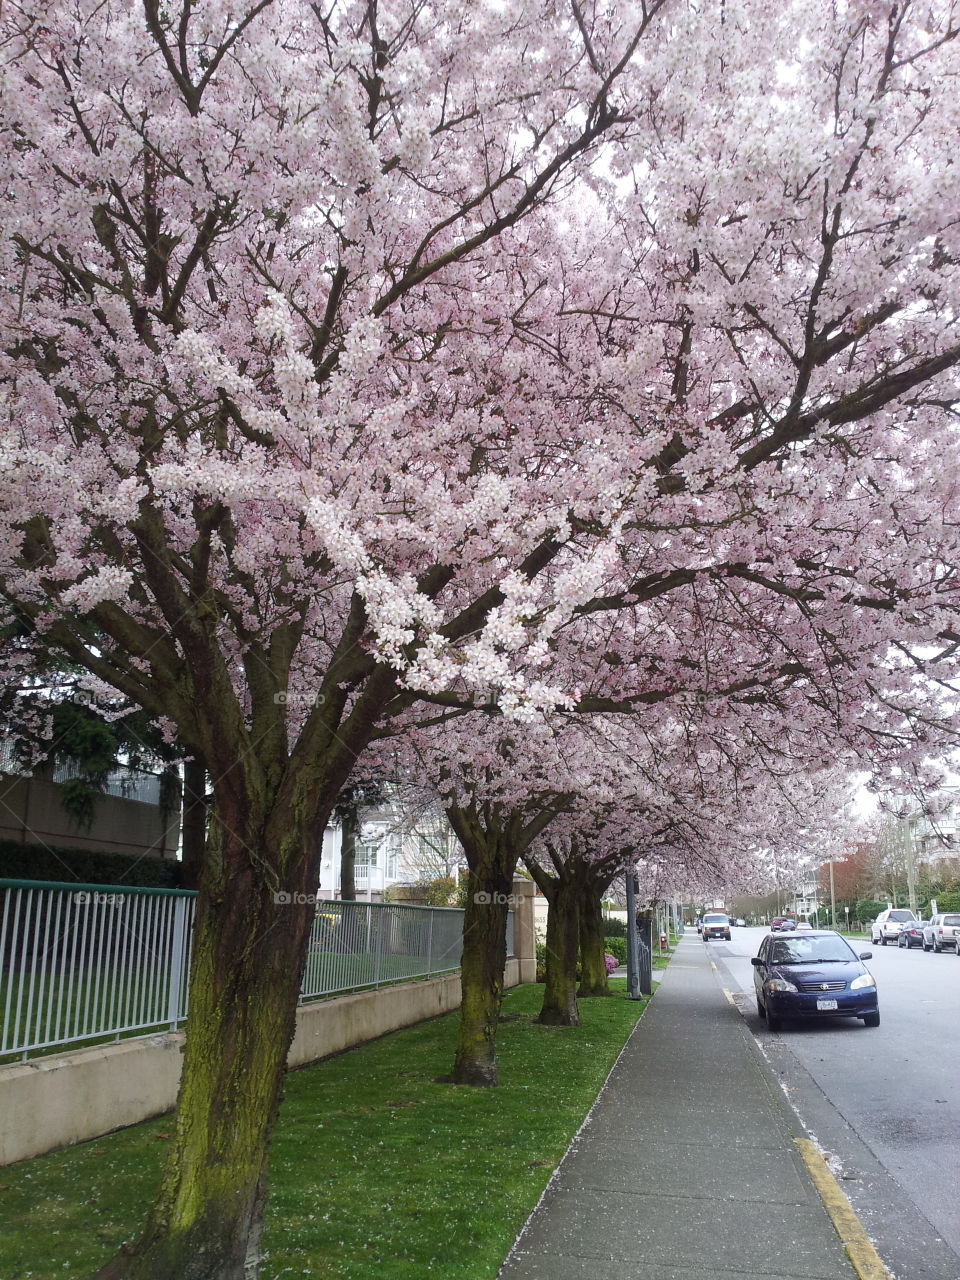 Cherry Blossoms in Jones Road